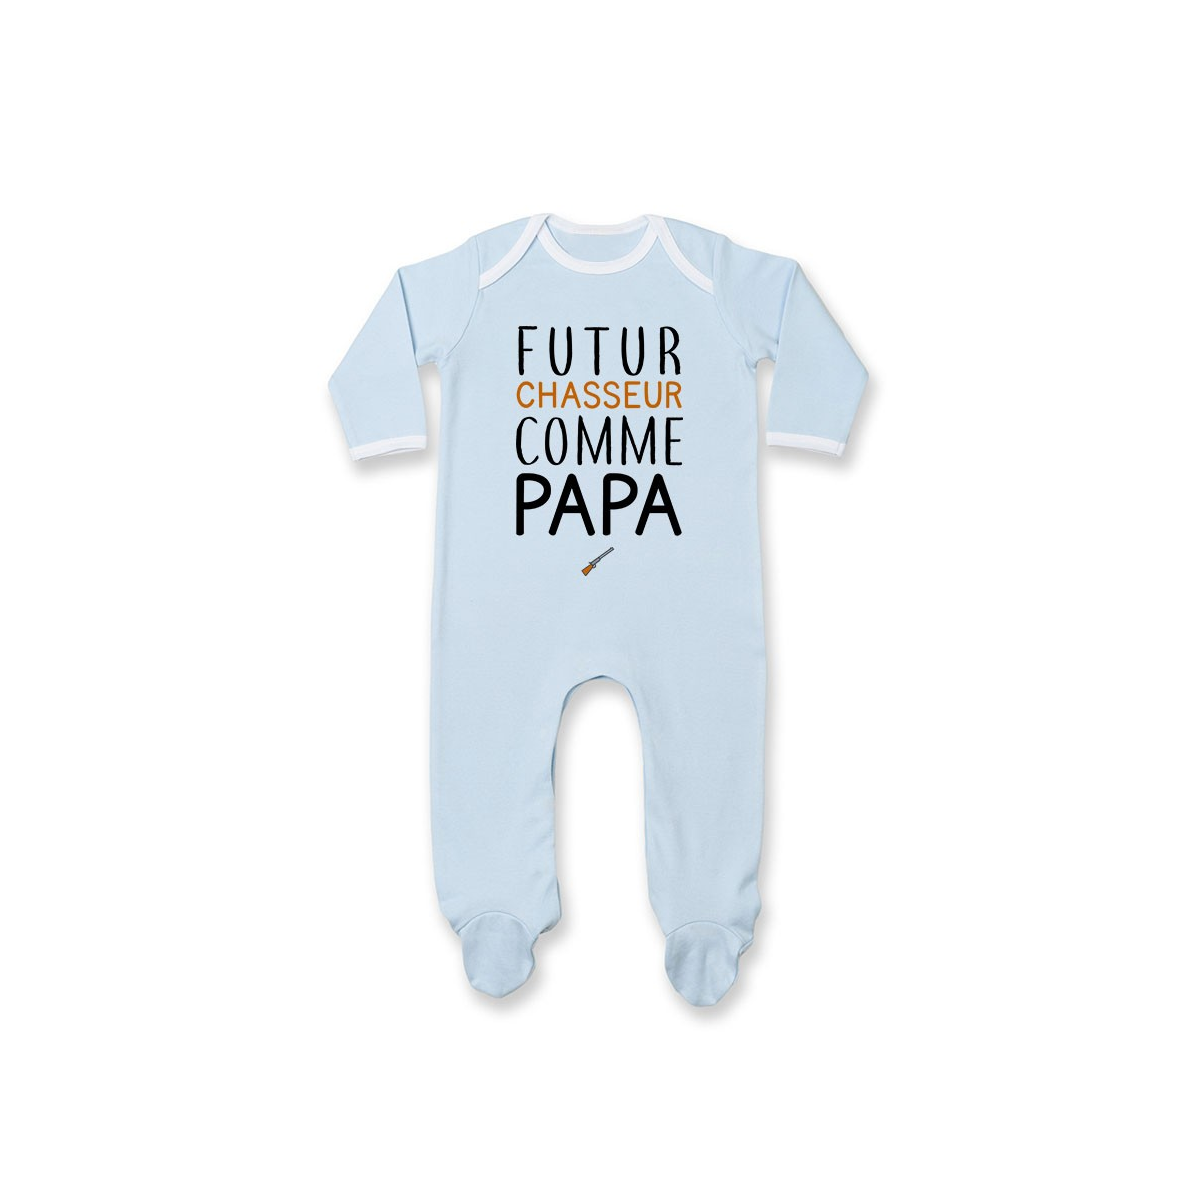 Pyjama bébé Futur chasseur comme papa